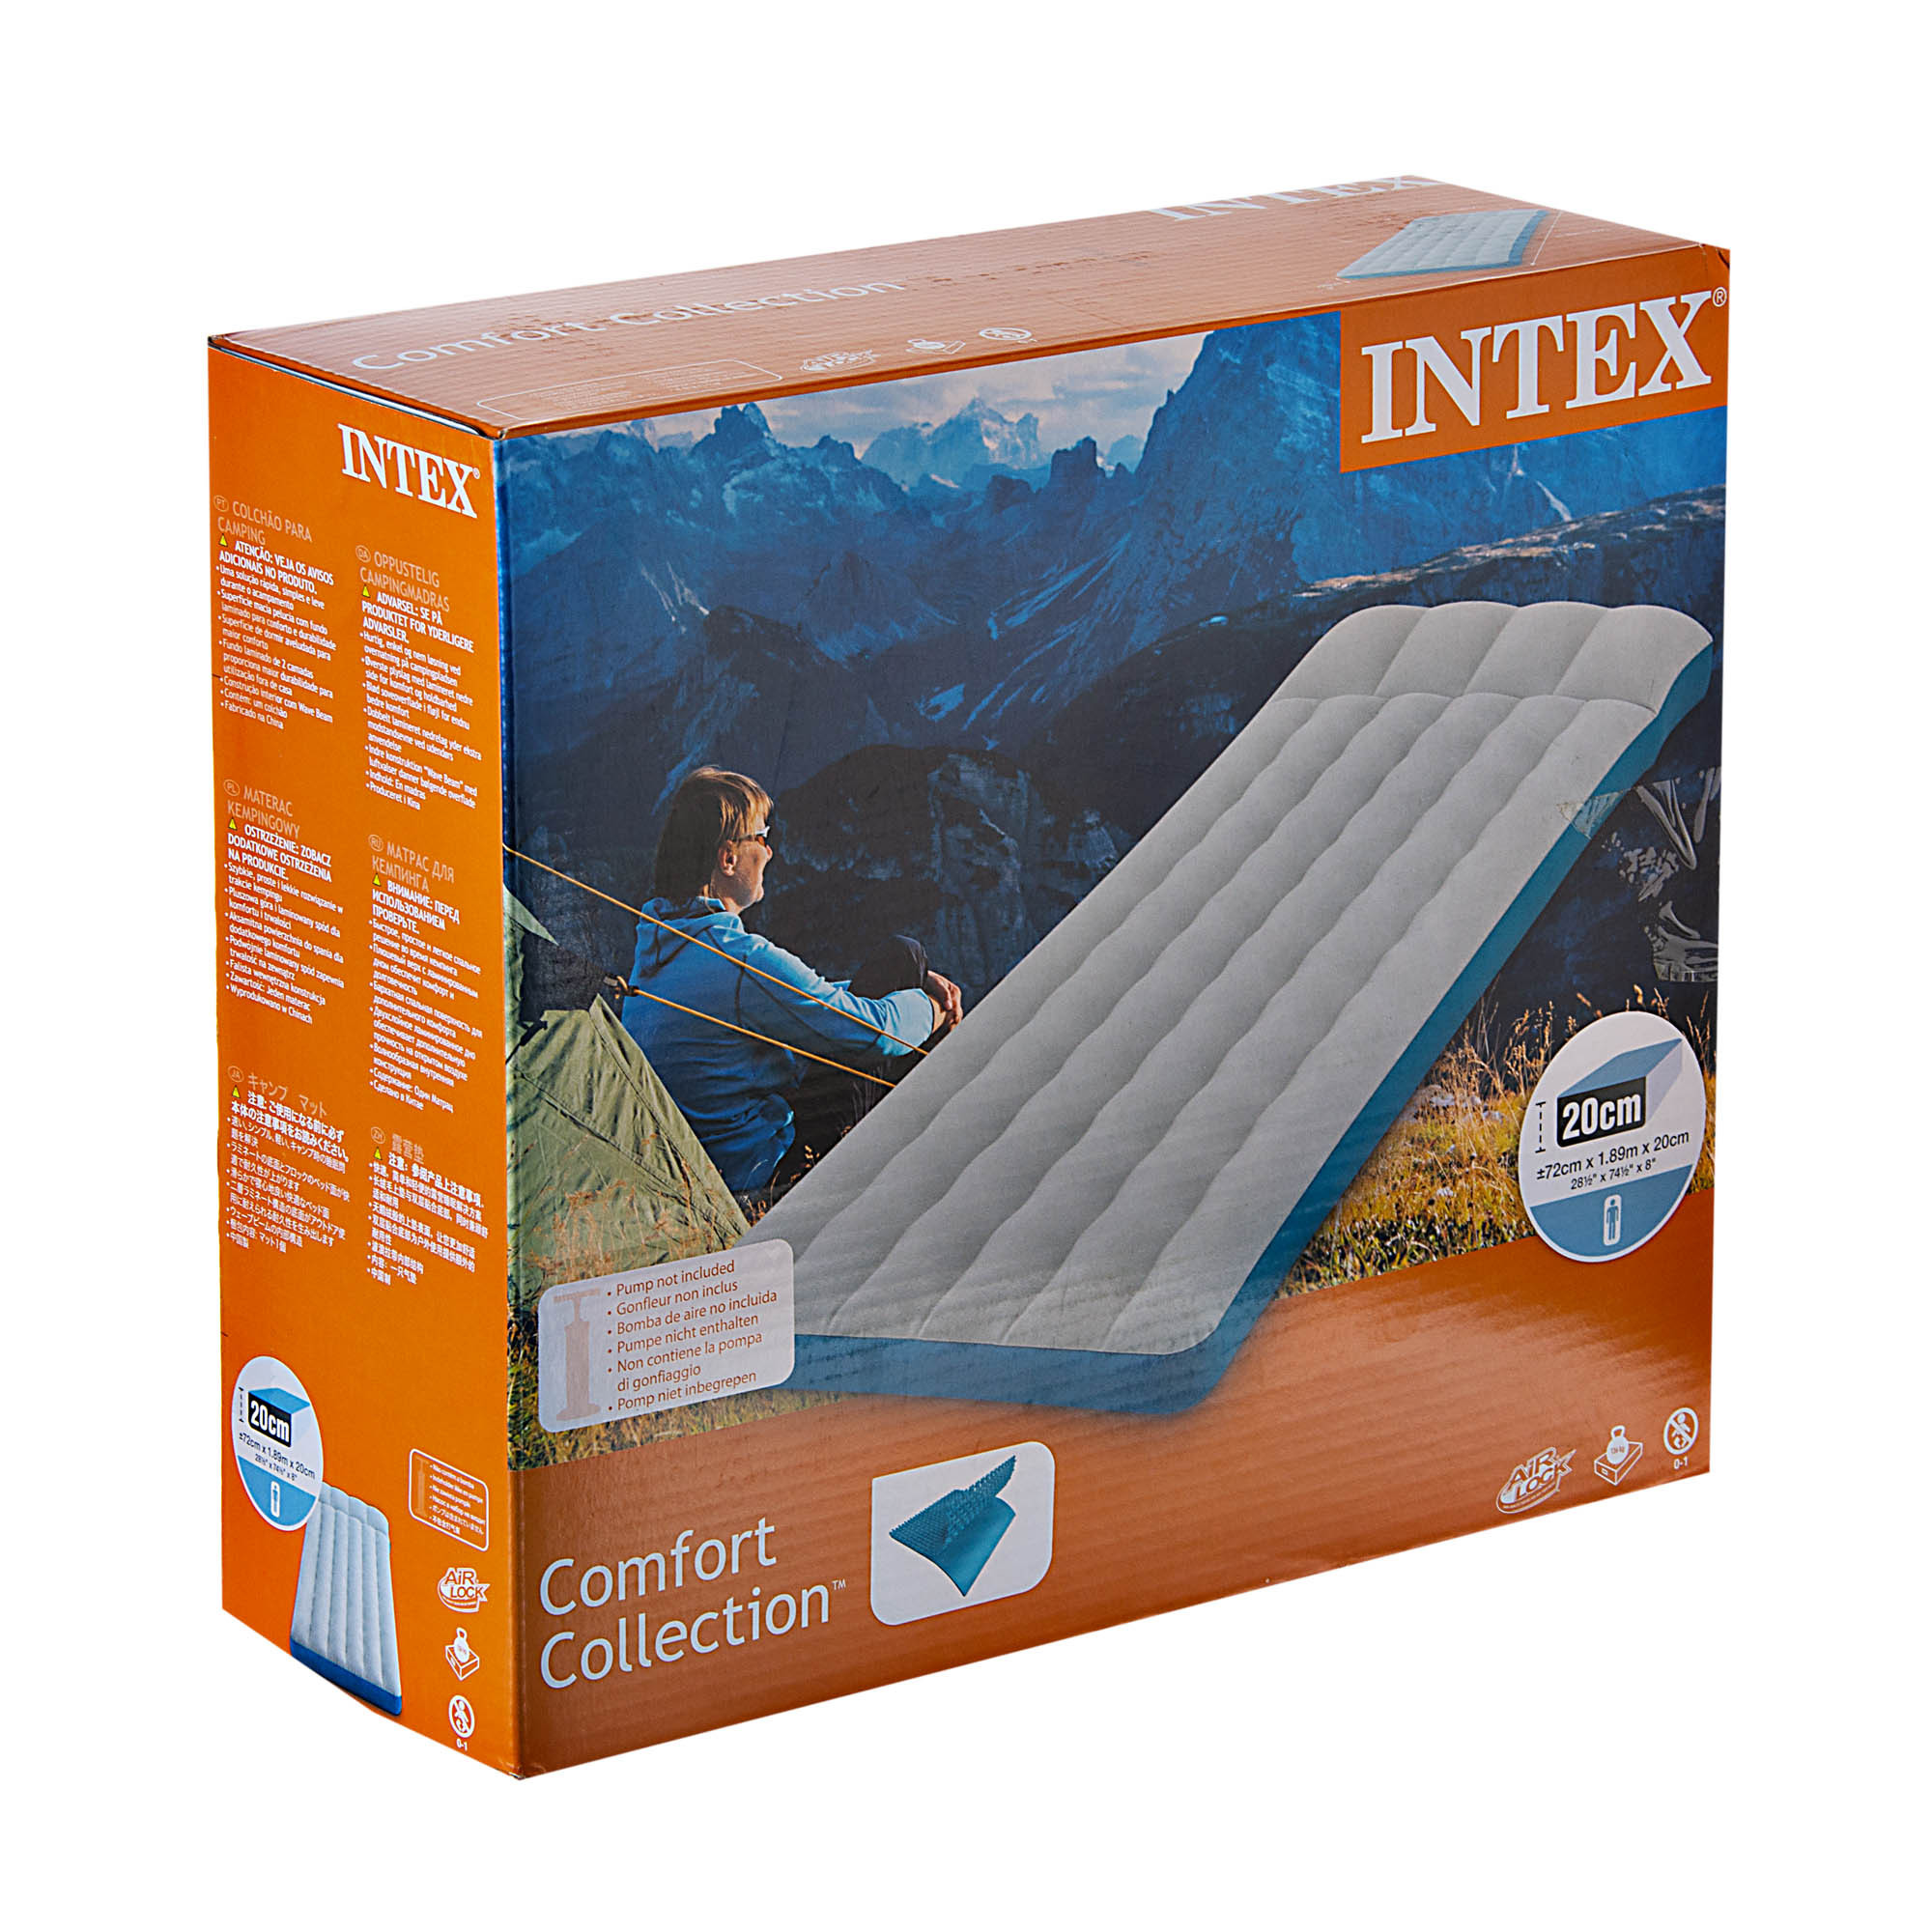 Colchoneta inflable para camping Intex elaborada en plástico y polivinilo.